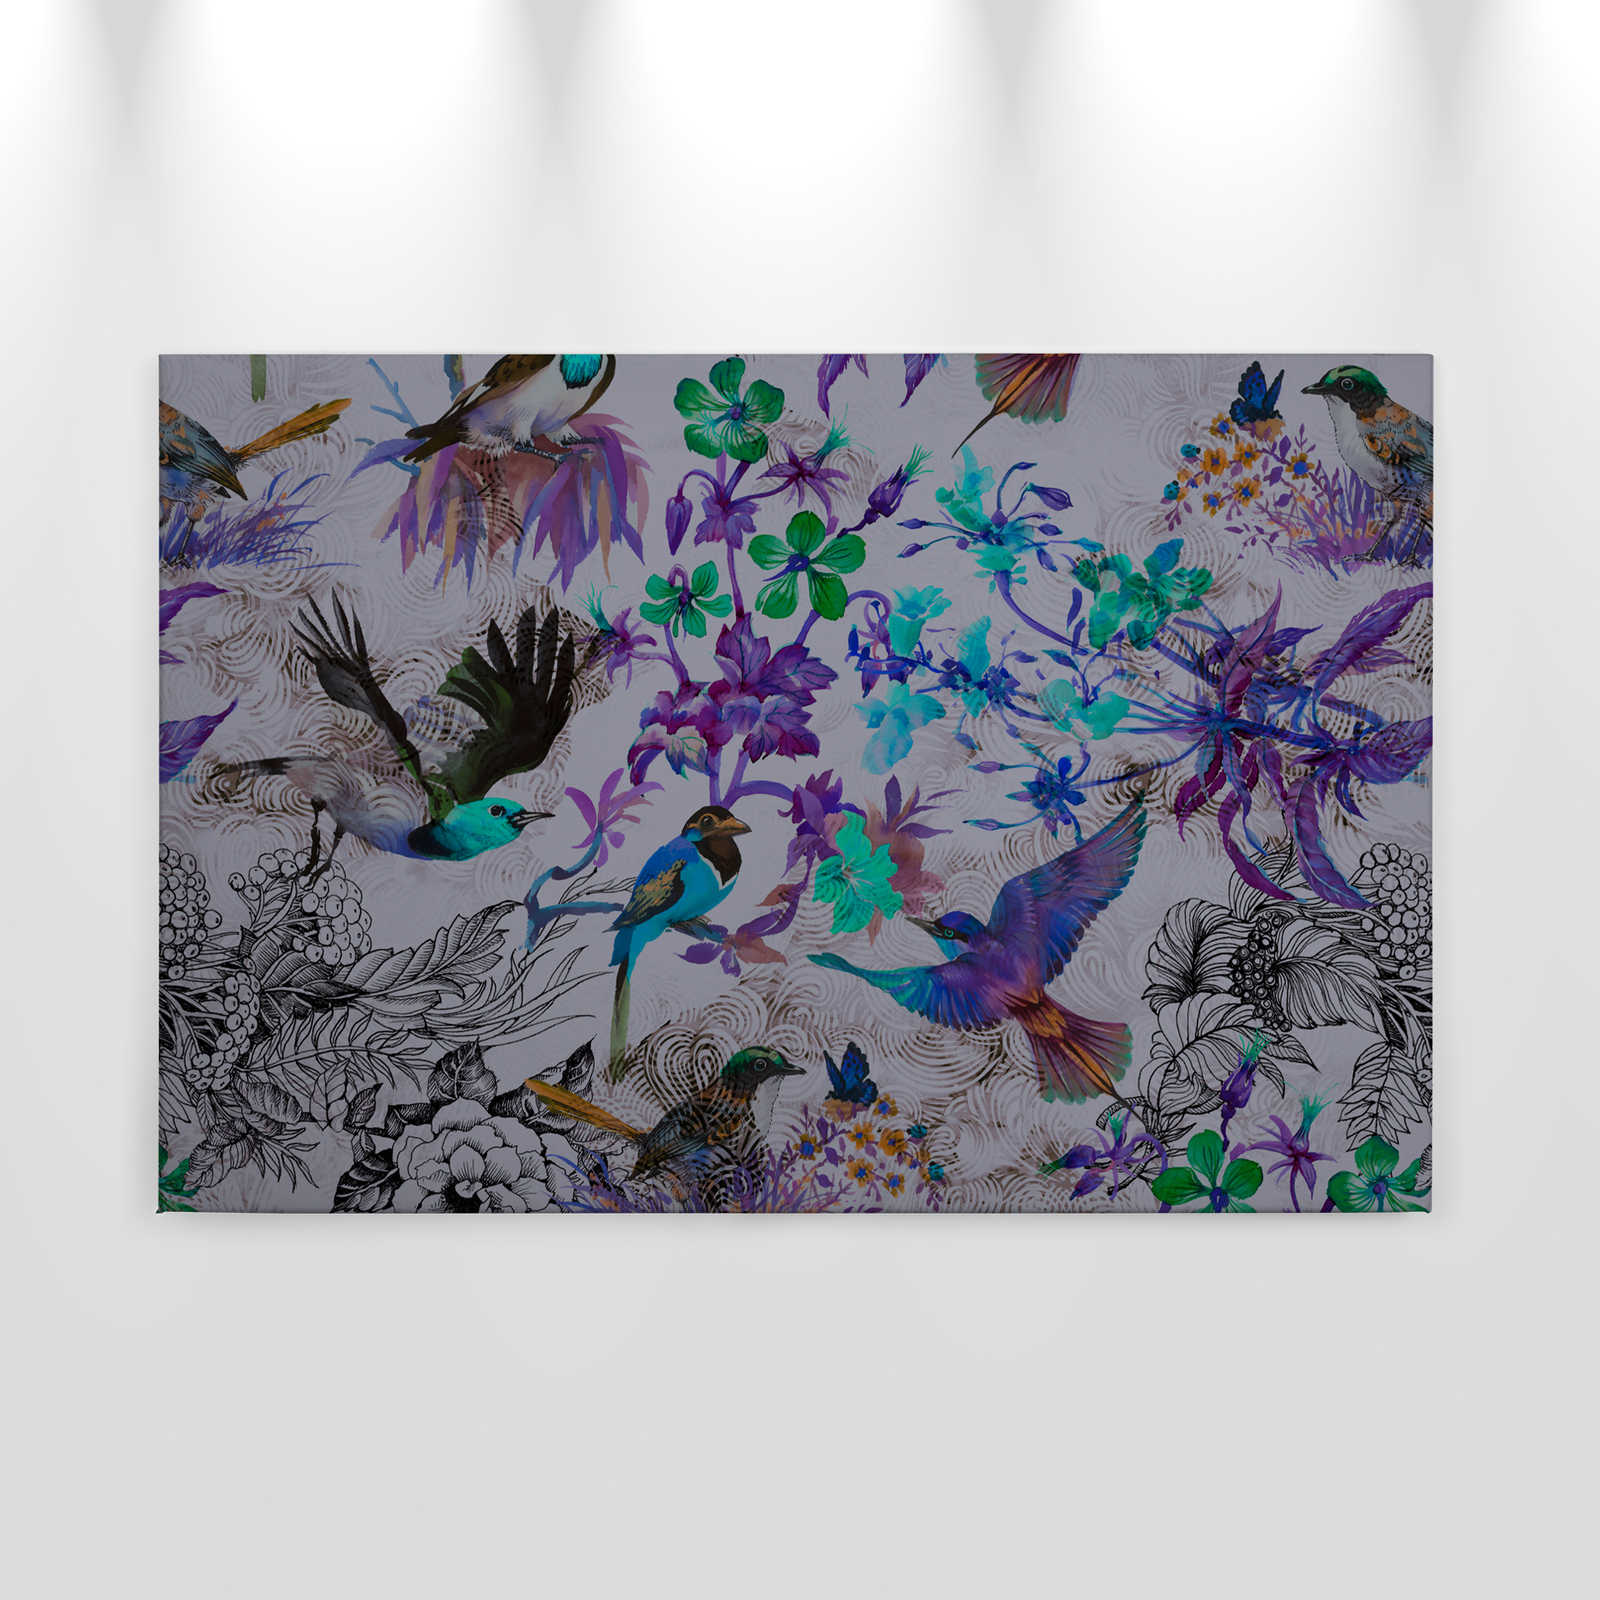             Toile violette avec fleurs & oiseaux - 0,90 m x 0,60 m
        